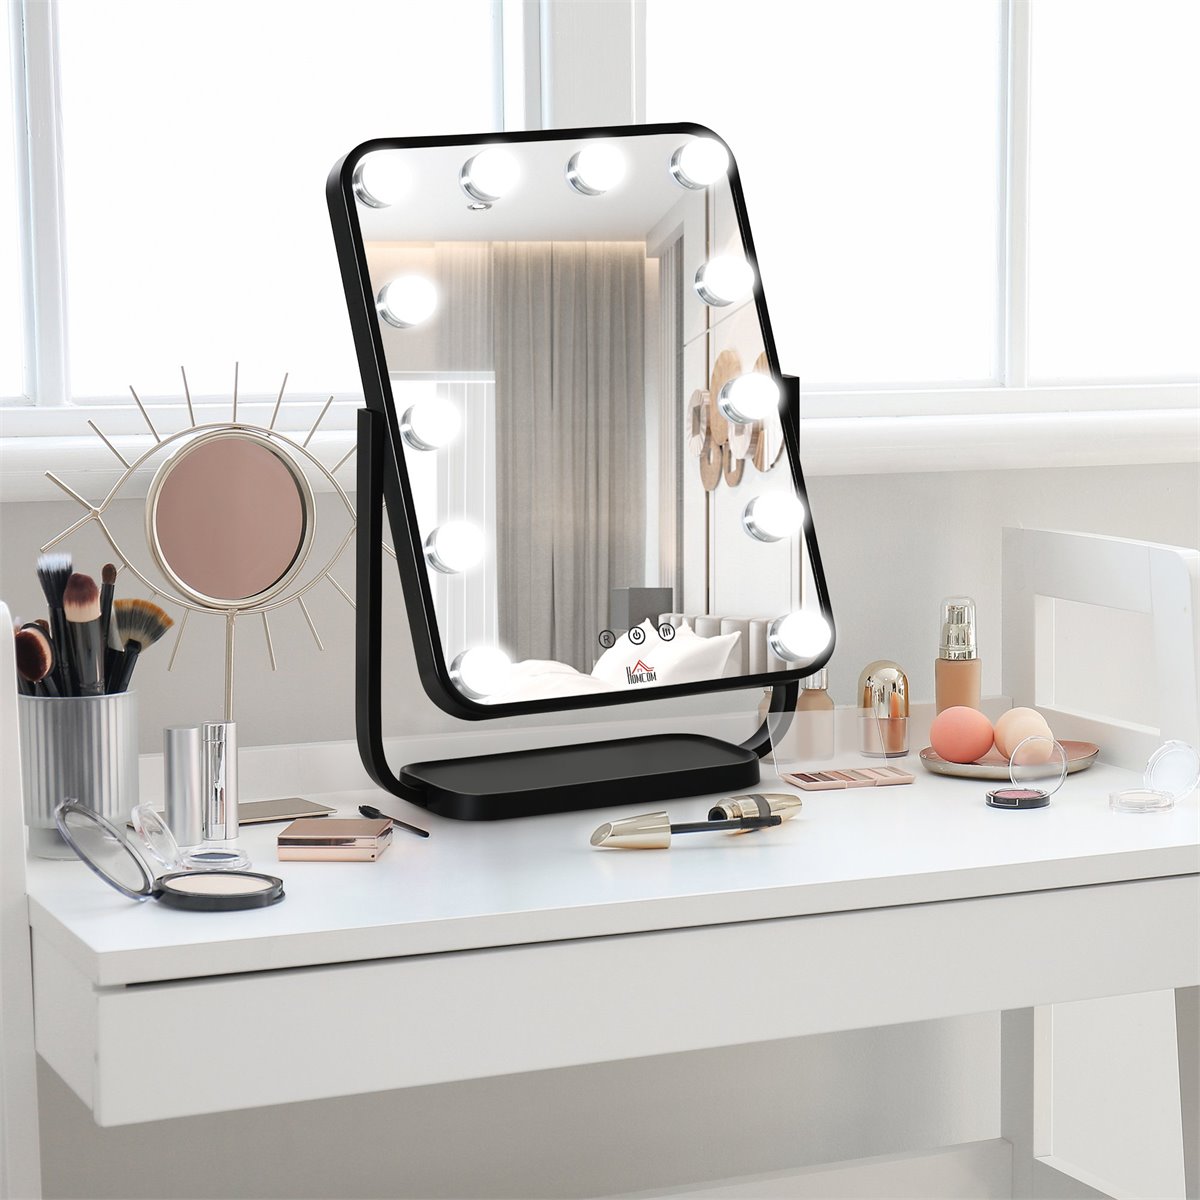 Espelho de Maquilhagem Espelho de Mesa com 12 Luzes LED 3 Temperaturas